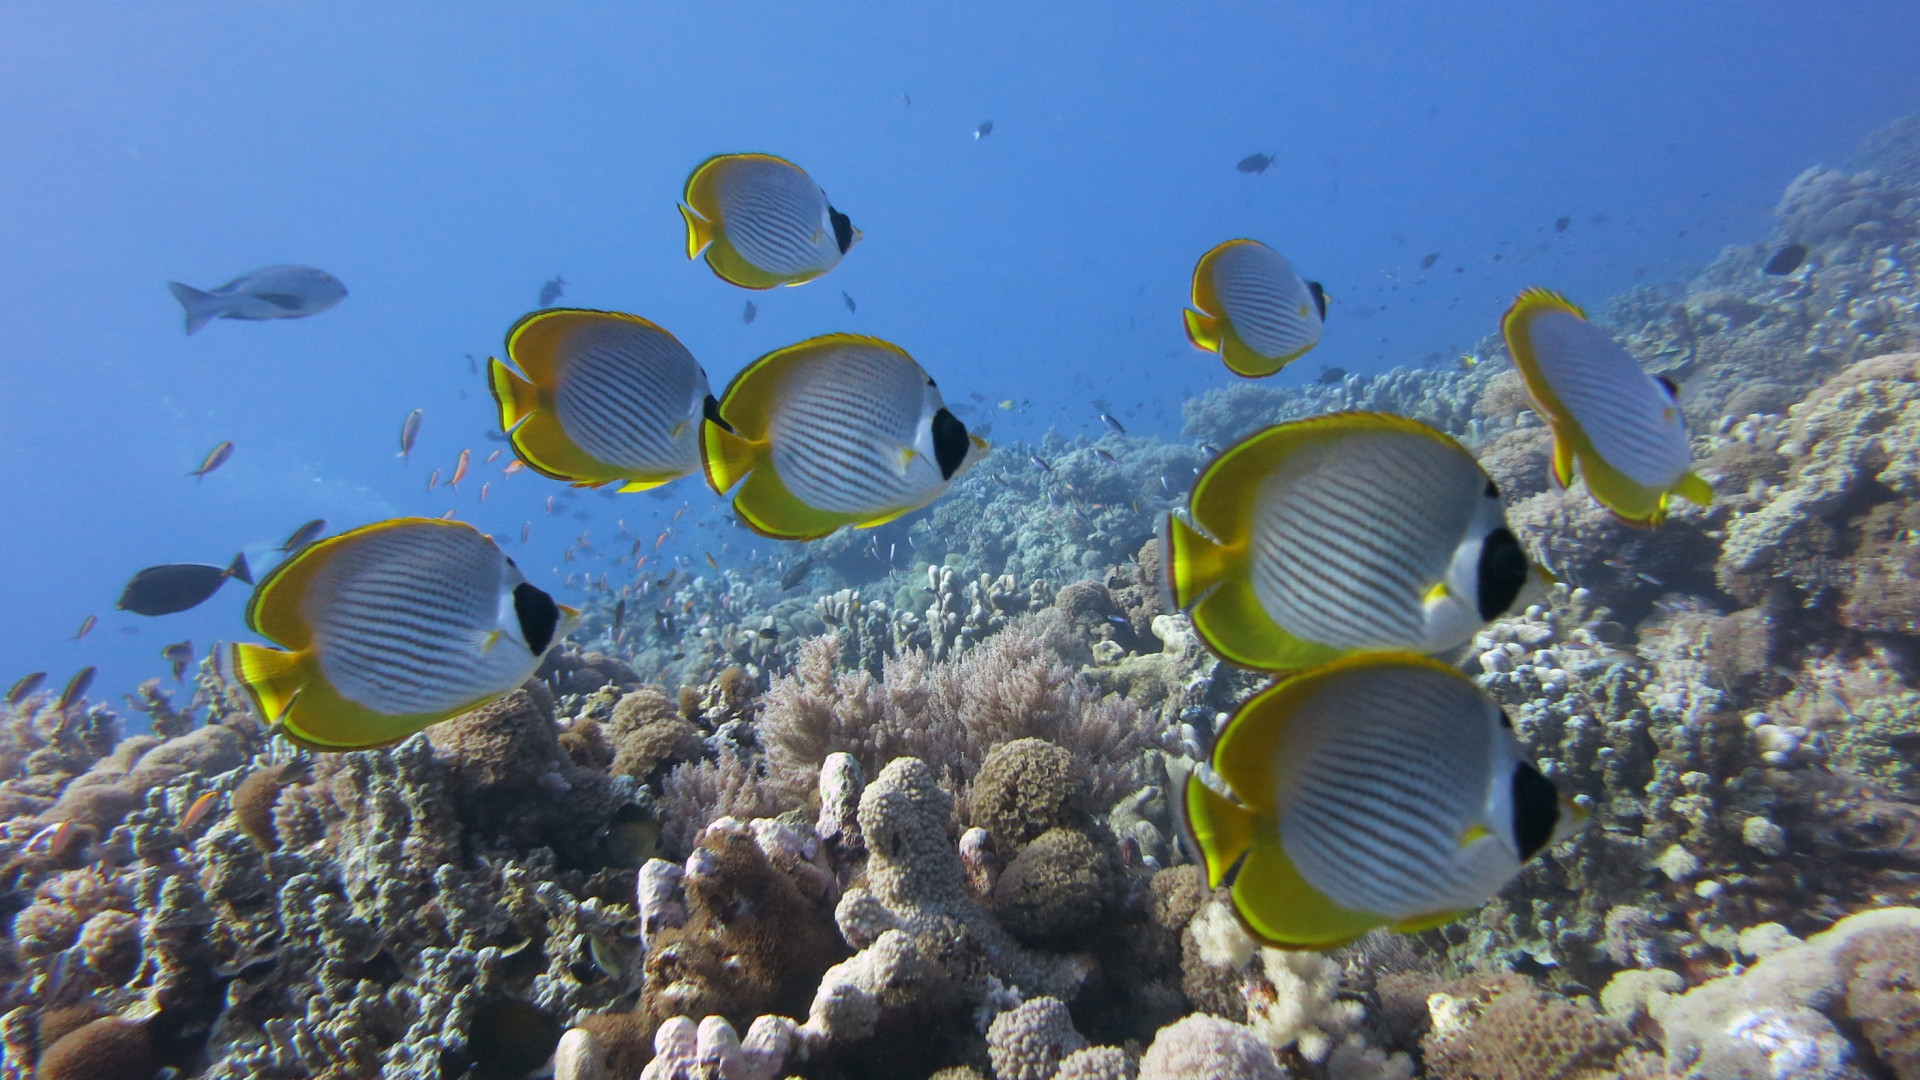 underwater hd wallpaper,fish,underwater,marine biology,coral reef fish,coral reef